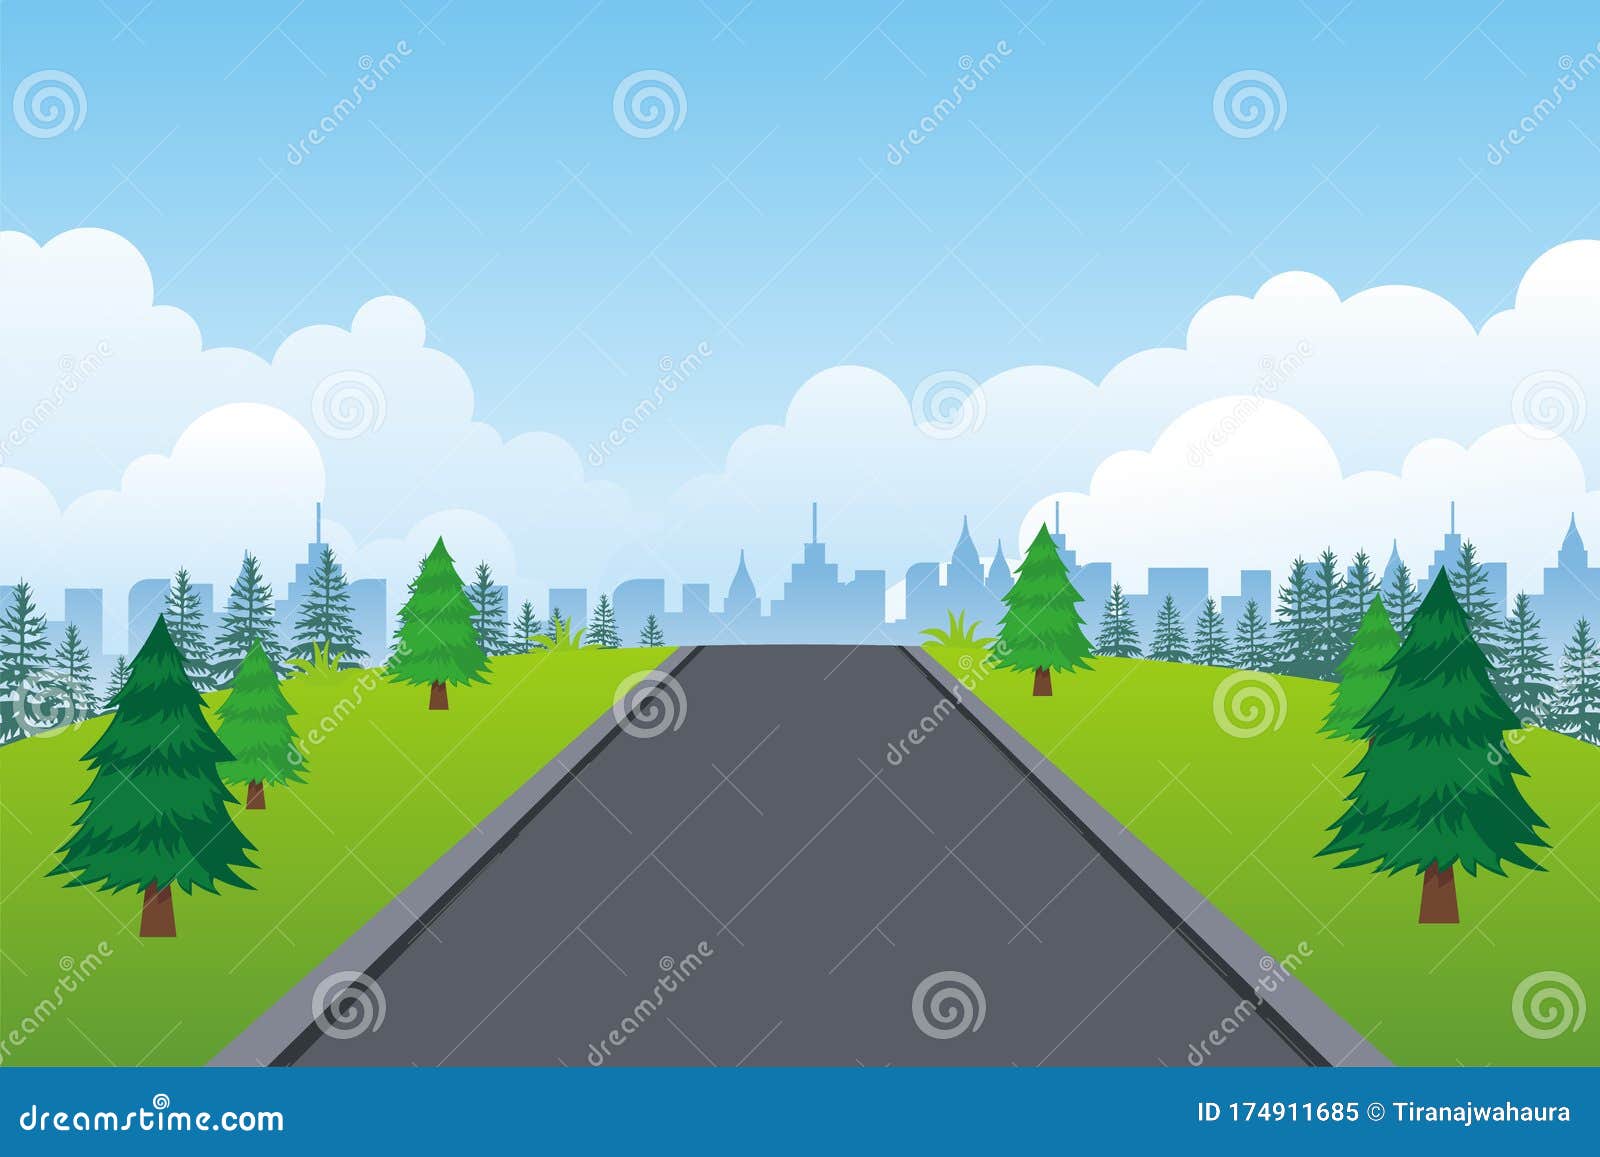 Landscape Road Vector Background, Flat Cartoon Natural Landscape ...